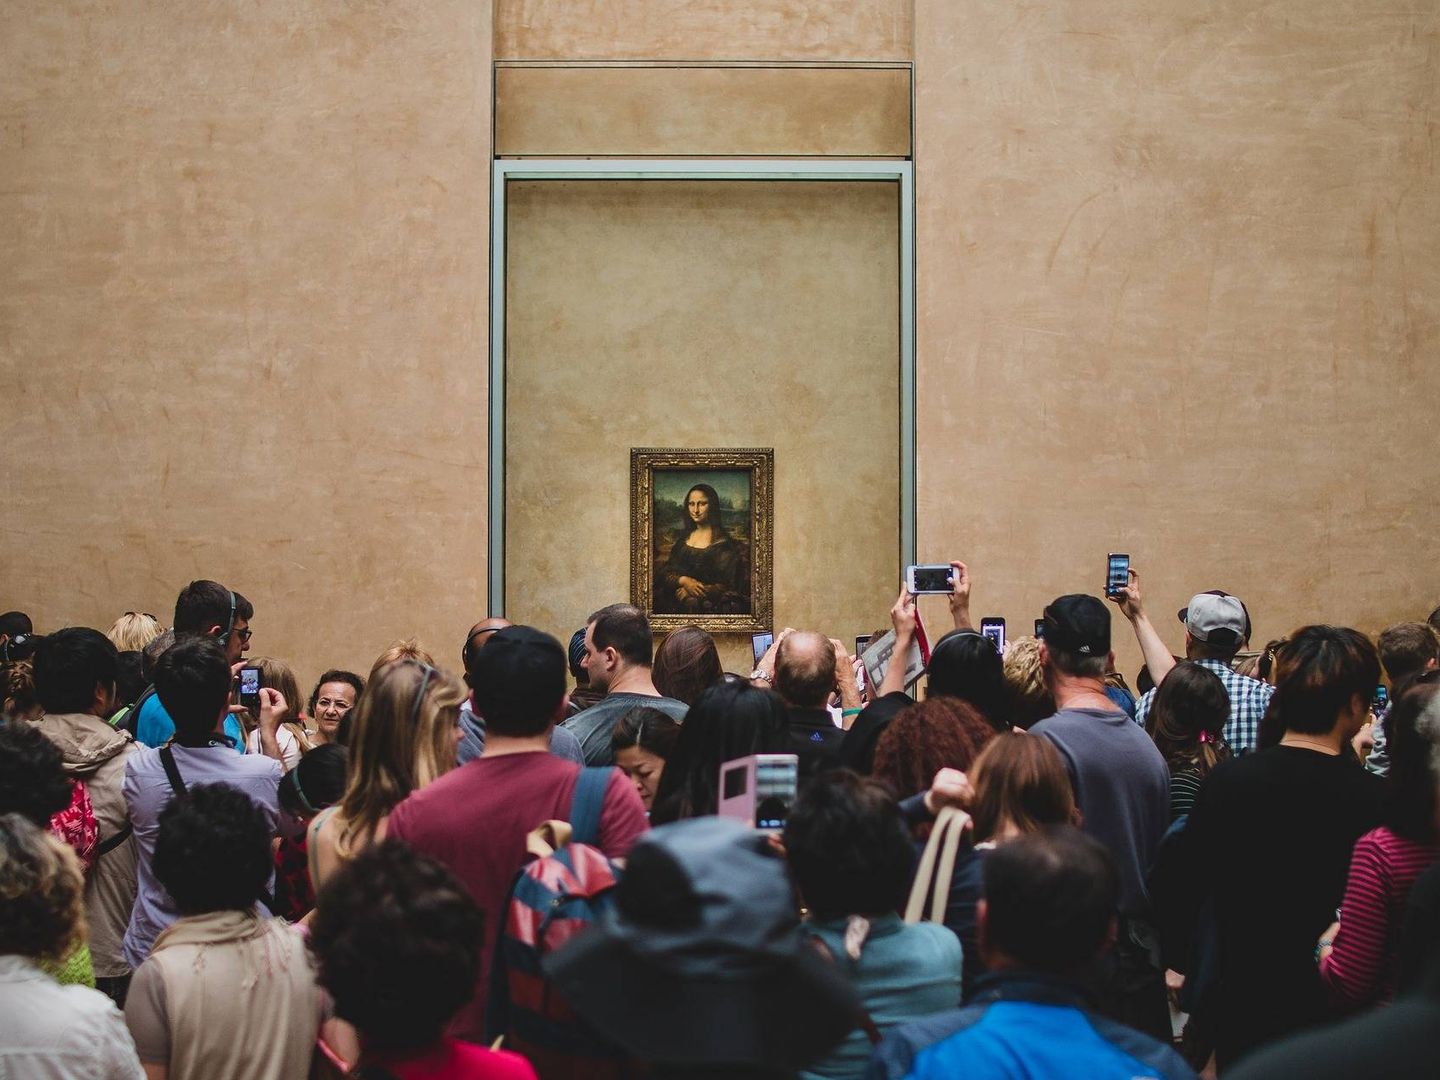 Decenas de turistas se amontonan frente a la Mona Lisa, en el Louvre, París. (Pixabay)